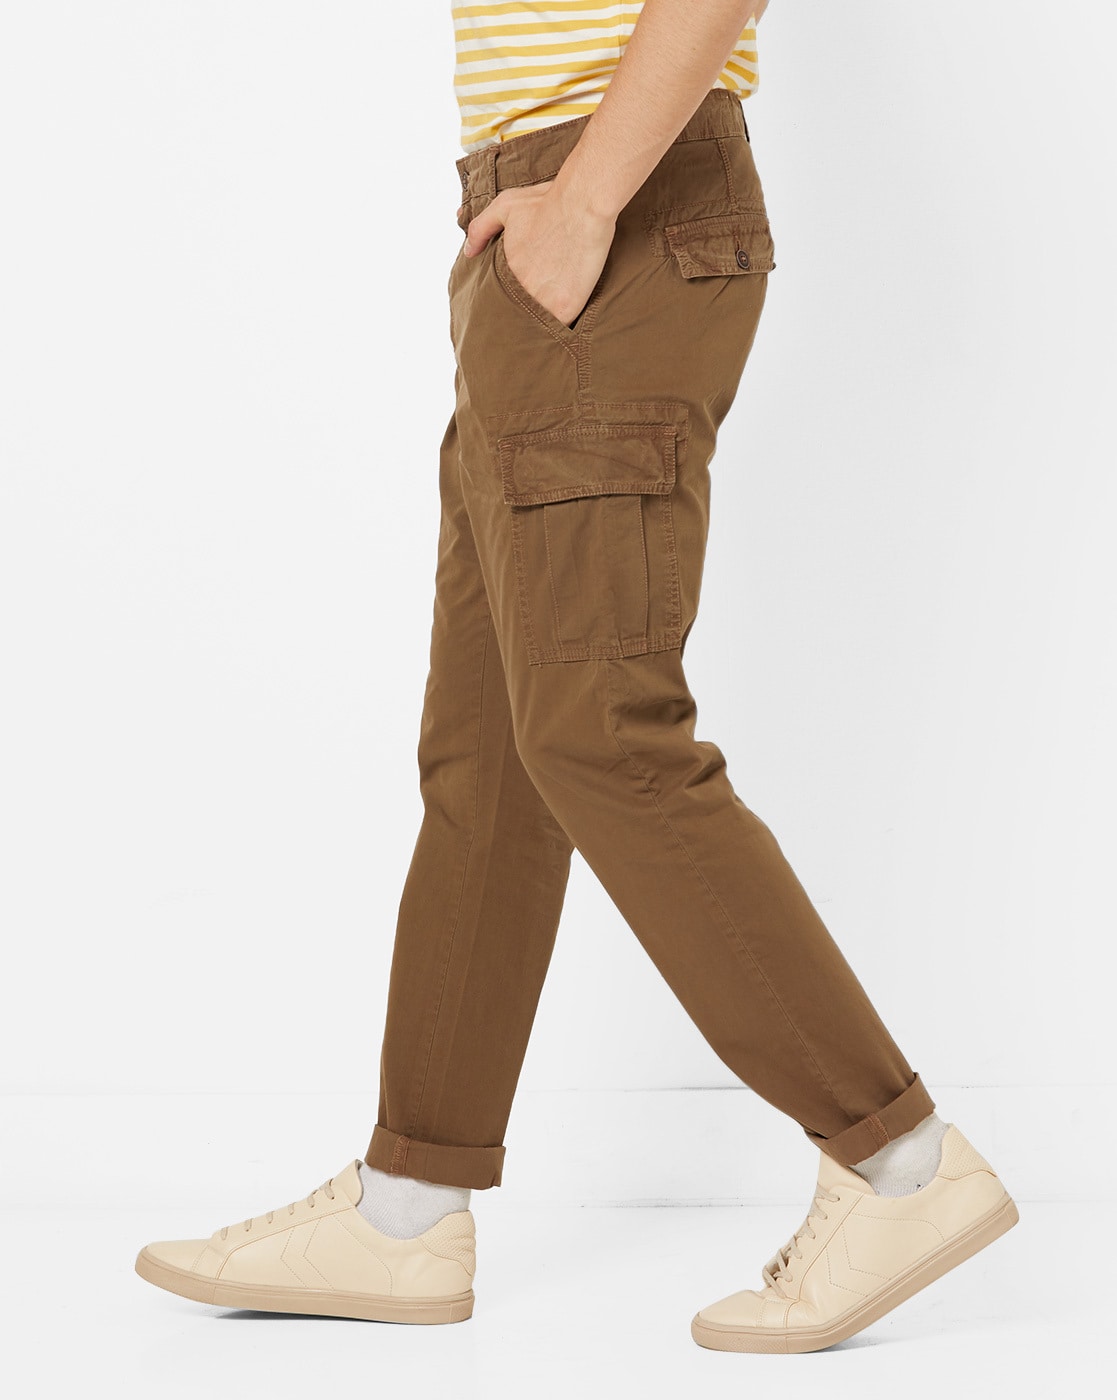 Buy Orange Trousers & Pants for Women by BENE KLEED Online | Ajio.com